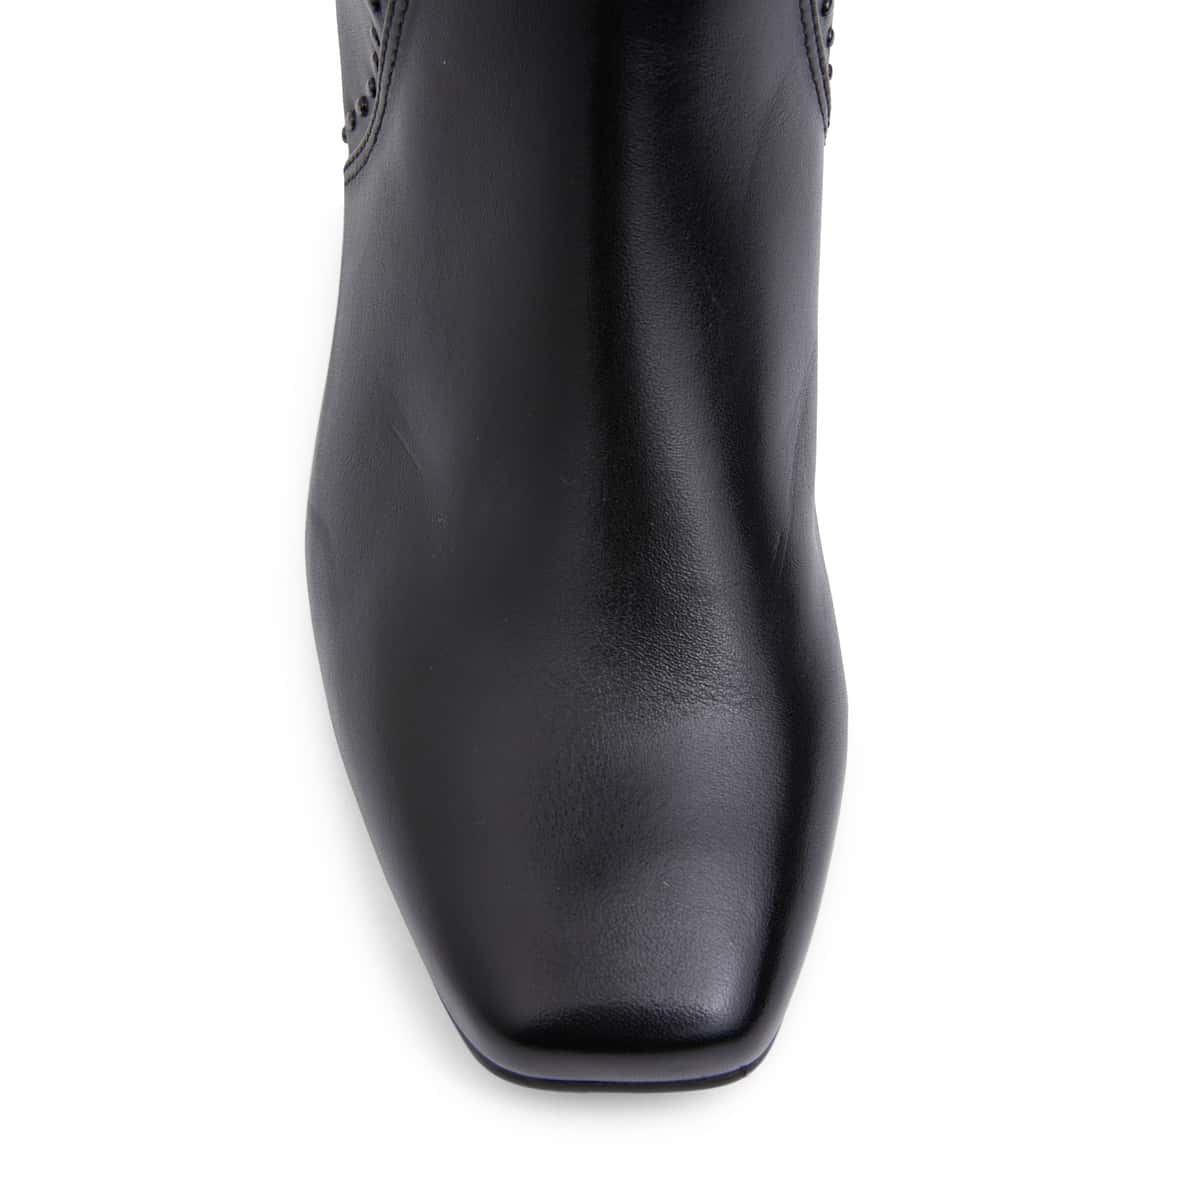 Grenada Boot in Black Leather